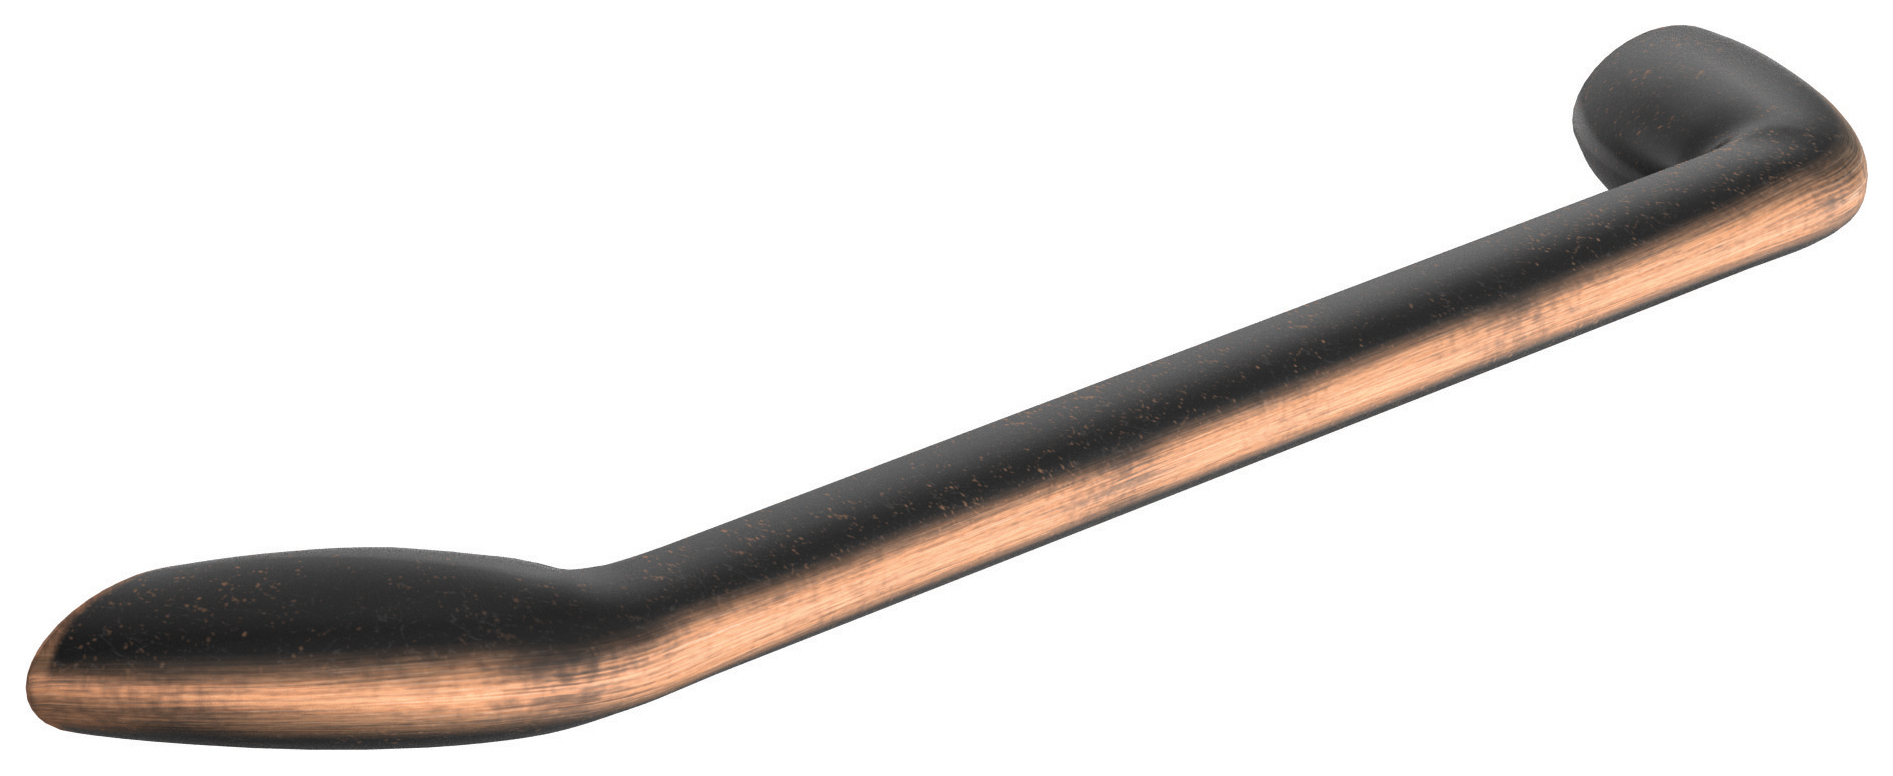 Image of Wickes Stella Strap Handle - Black & Copper Finish 160mm